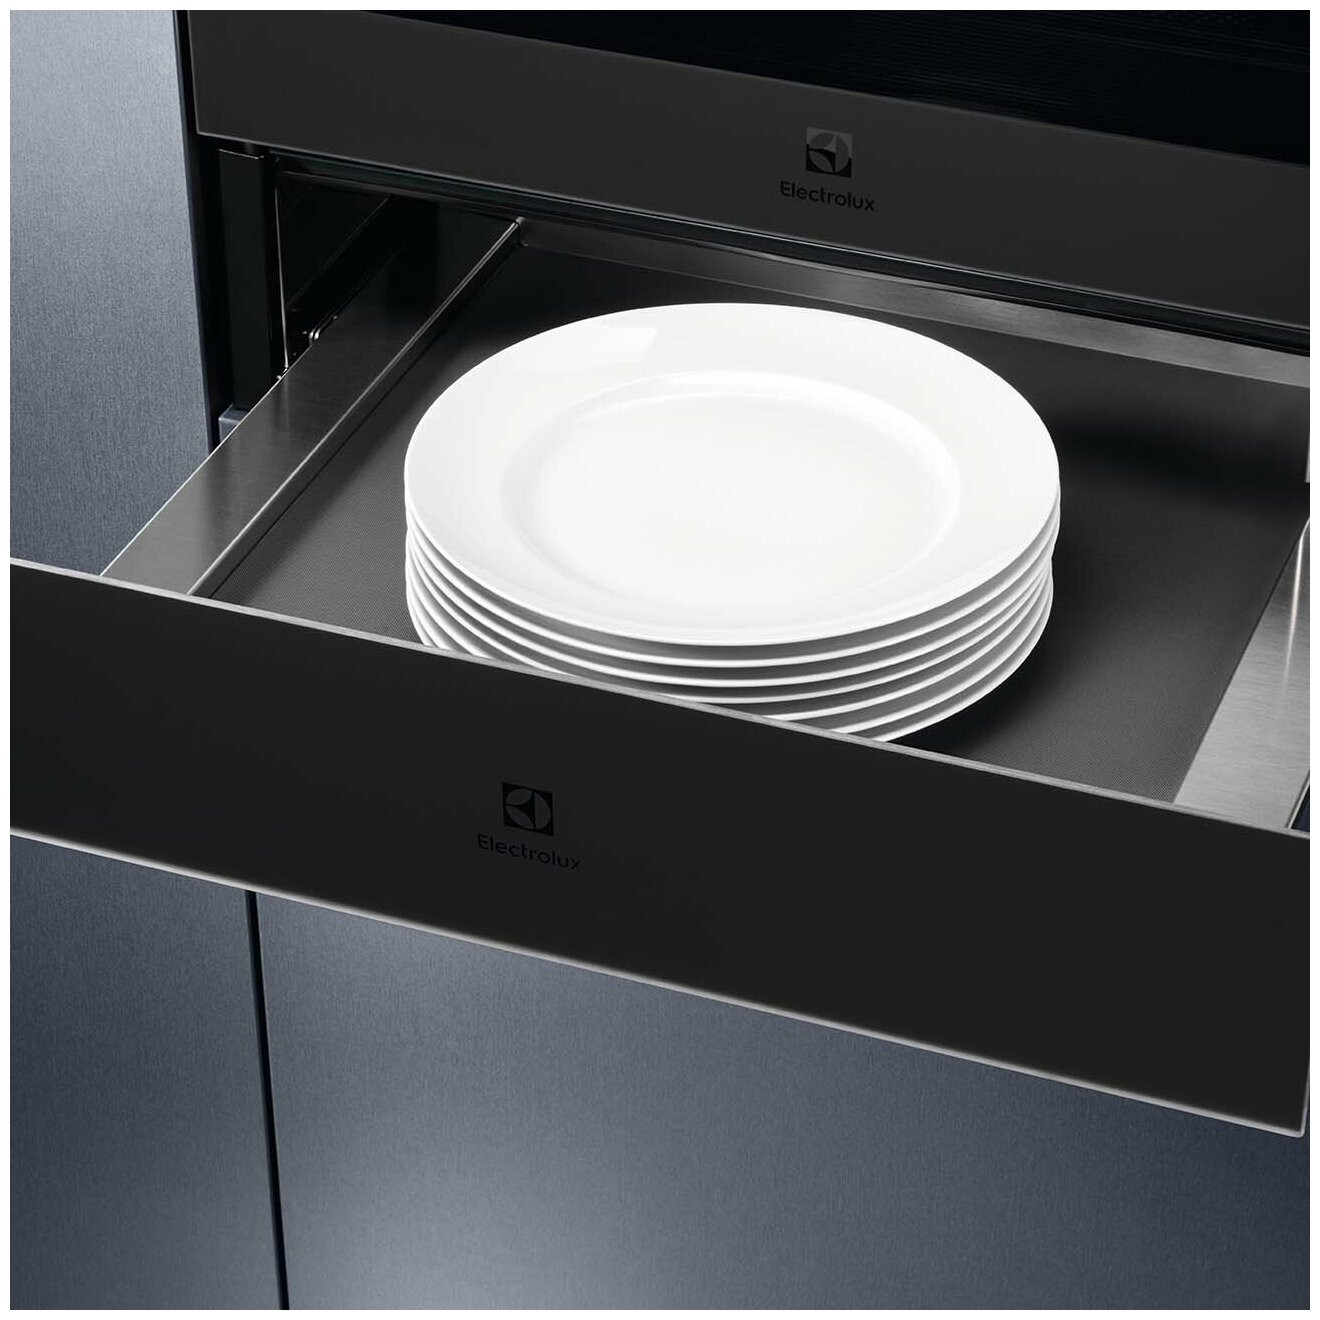 Встраиваемый подогреватель для посуды Electrolux Intuit 900 KBD4T - фотография № 6